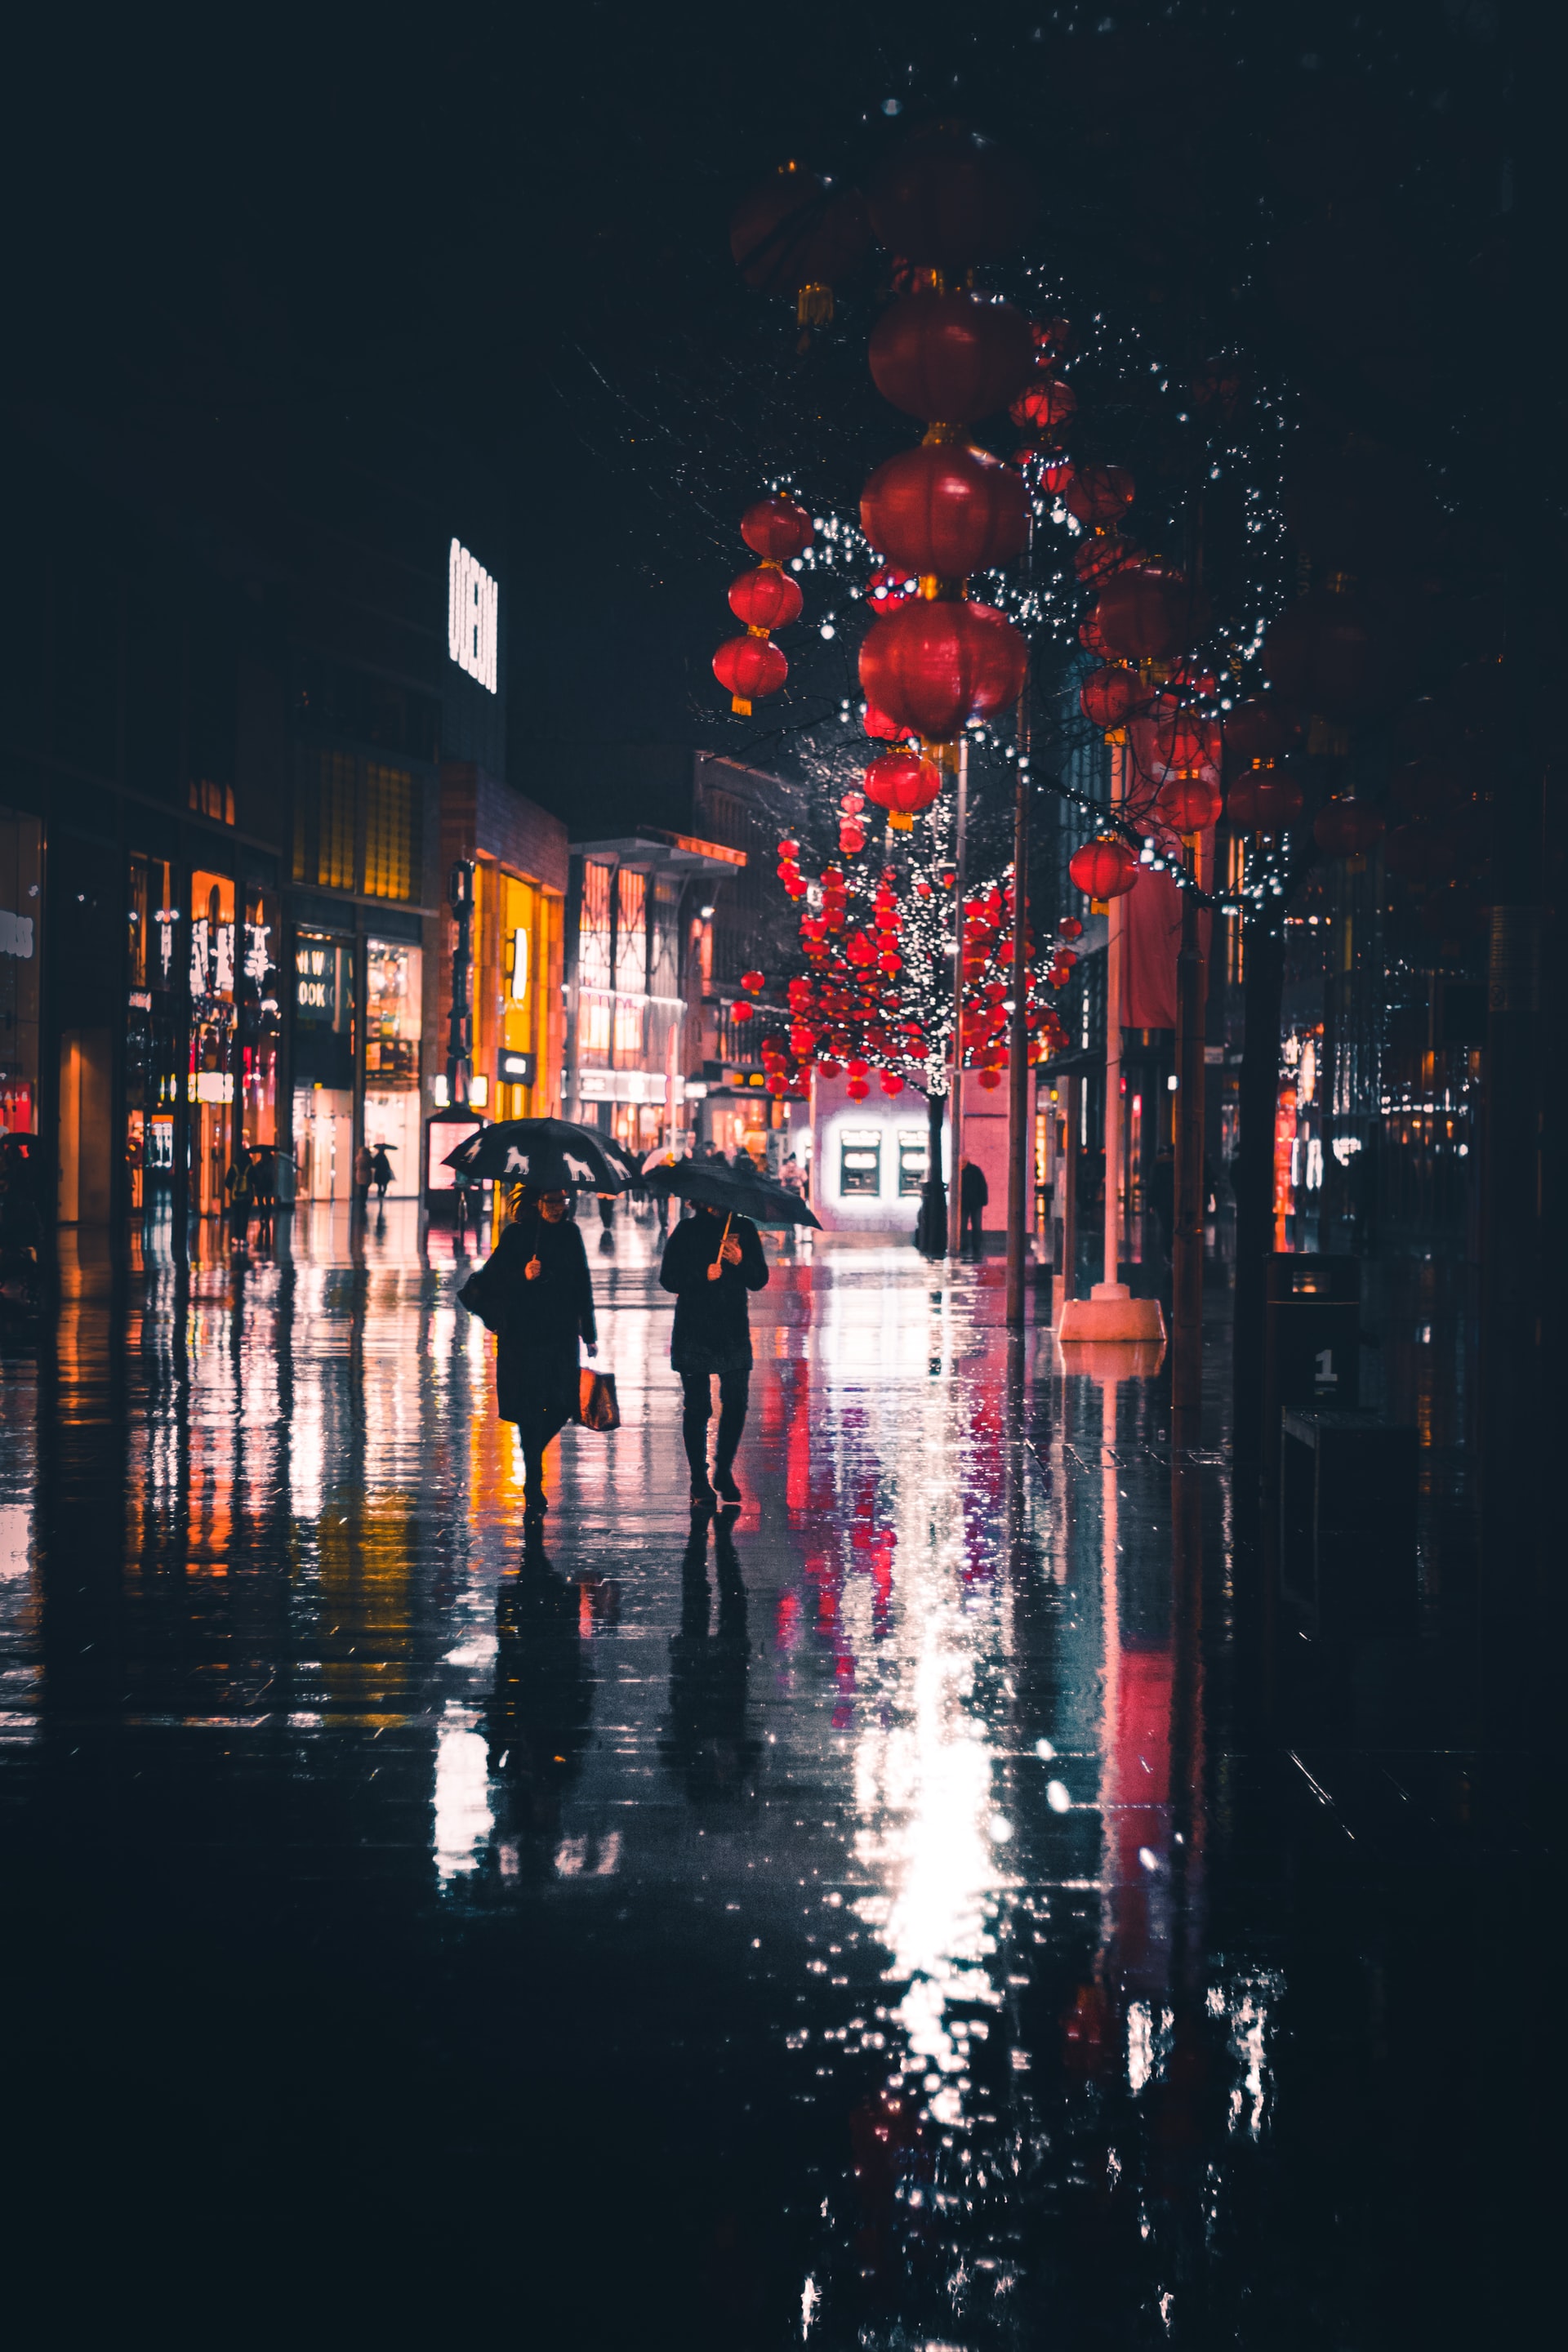 Hình ảnh mưa đêm buồn sẽ đưa bạn đến trong những giây phút thư giãn đầy cảm xúc, những ngày mưa không lại còn đơn độc và u uất nữa.